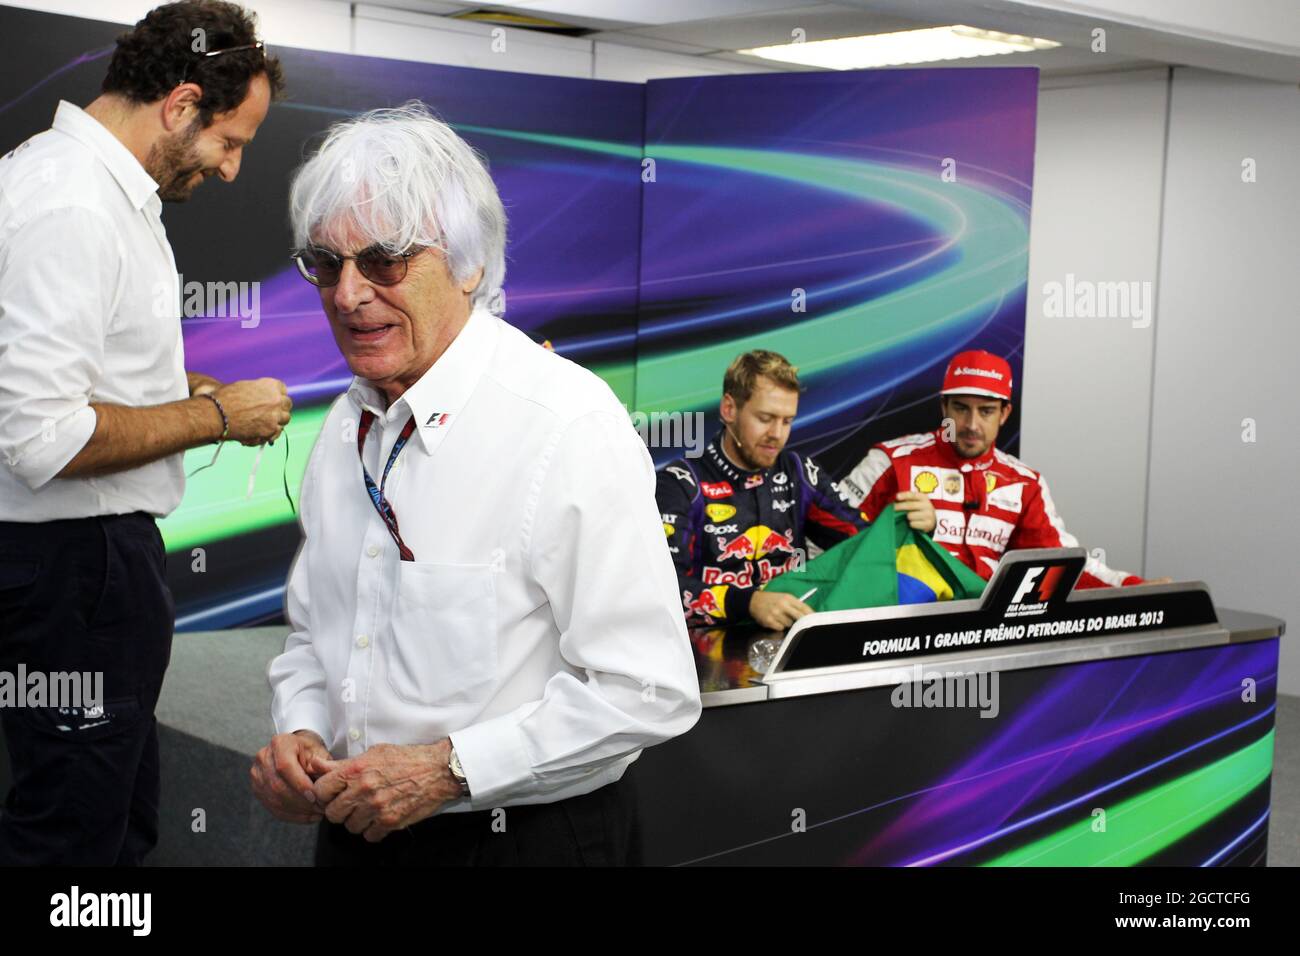 Bernie Ecclestone (GBR) il CEO di Formula One Group (FOM) presenta una bandiera brasiliana, firmata da sé e da tutti i piloti, per Sebastian Vettel (GER) Red Bull Racing a firmare, da presentare a Mark Webber (AUS) Red Bull Racing. Gran Premio del Brasile, domenica 24 novembre 2013. San Paolo, Brasile. Foto Stock